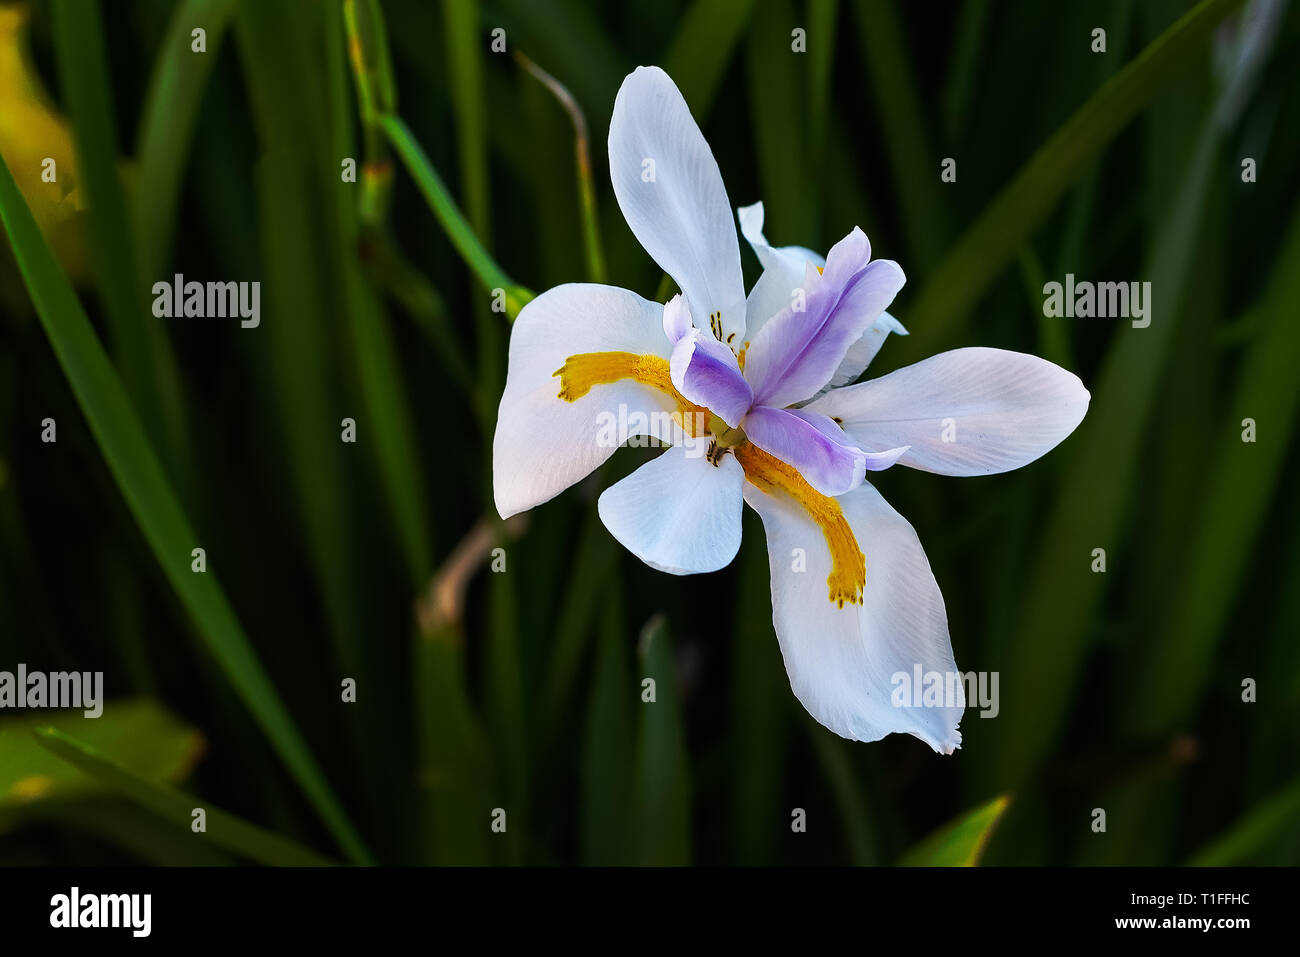 Weiß Wild Iris (Märchen Iris) mit linearen Blättern und großen, weißen Blüten mit gelben Flecken am äußeren fällt und dunkel lila Streifen auf den inneren Blütenblätter. Stockfoto